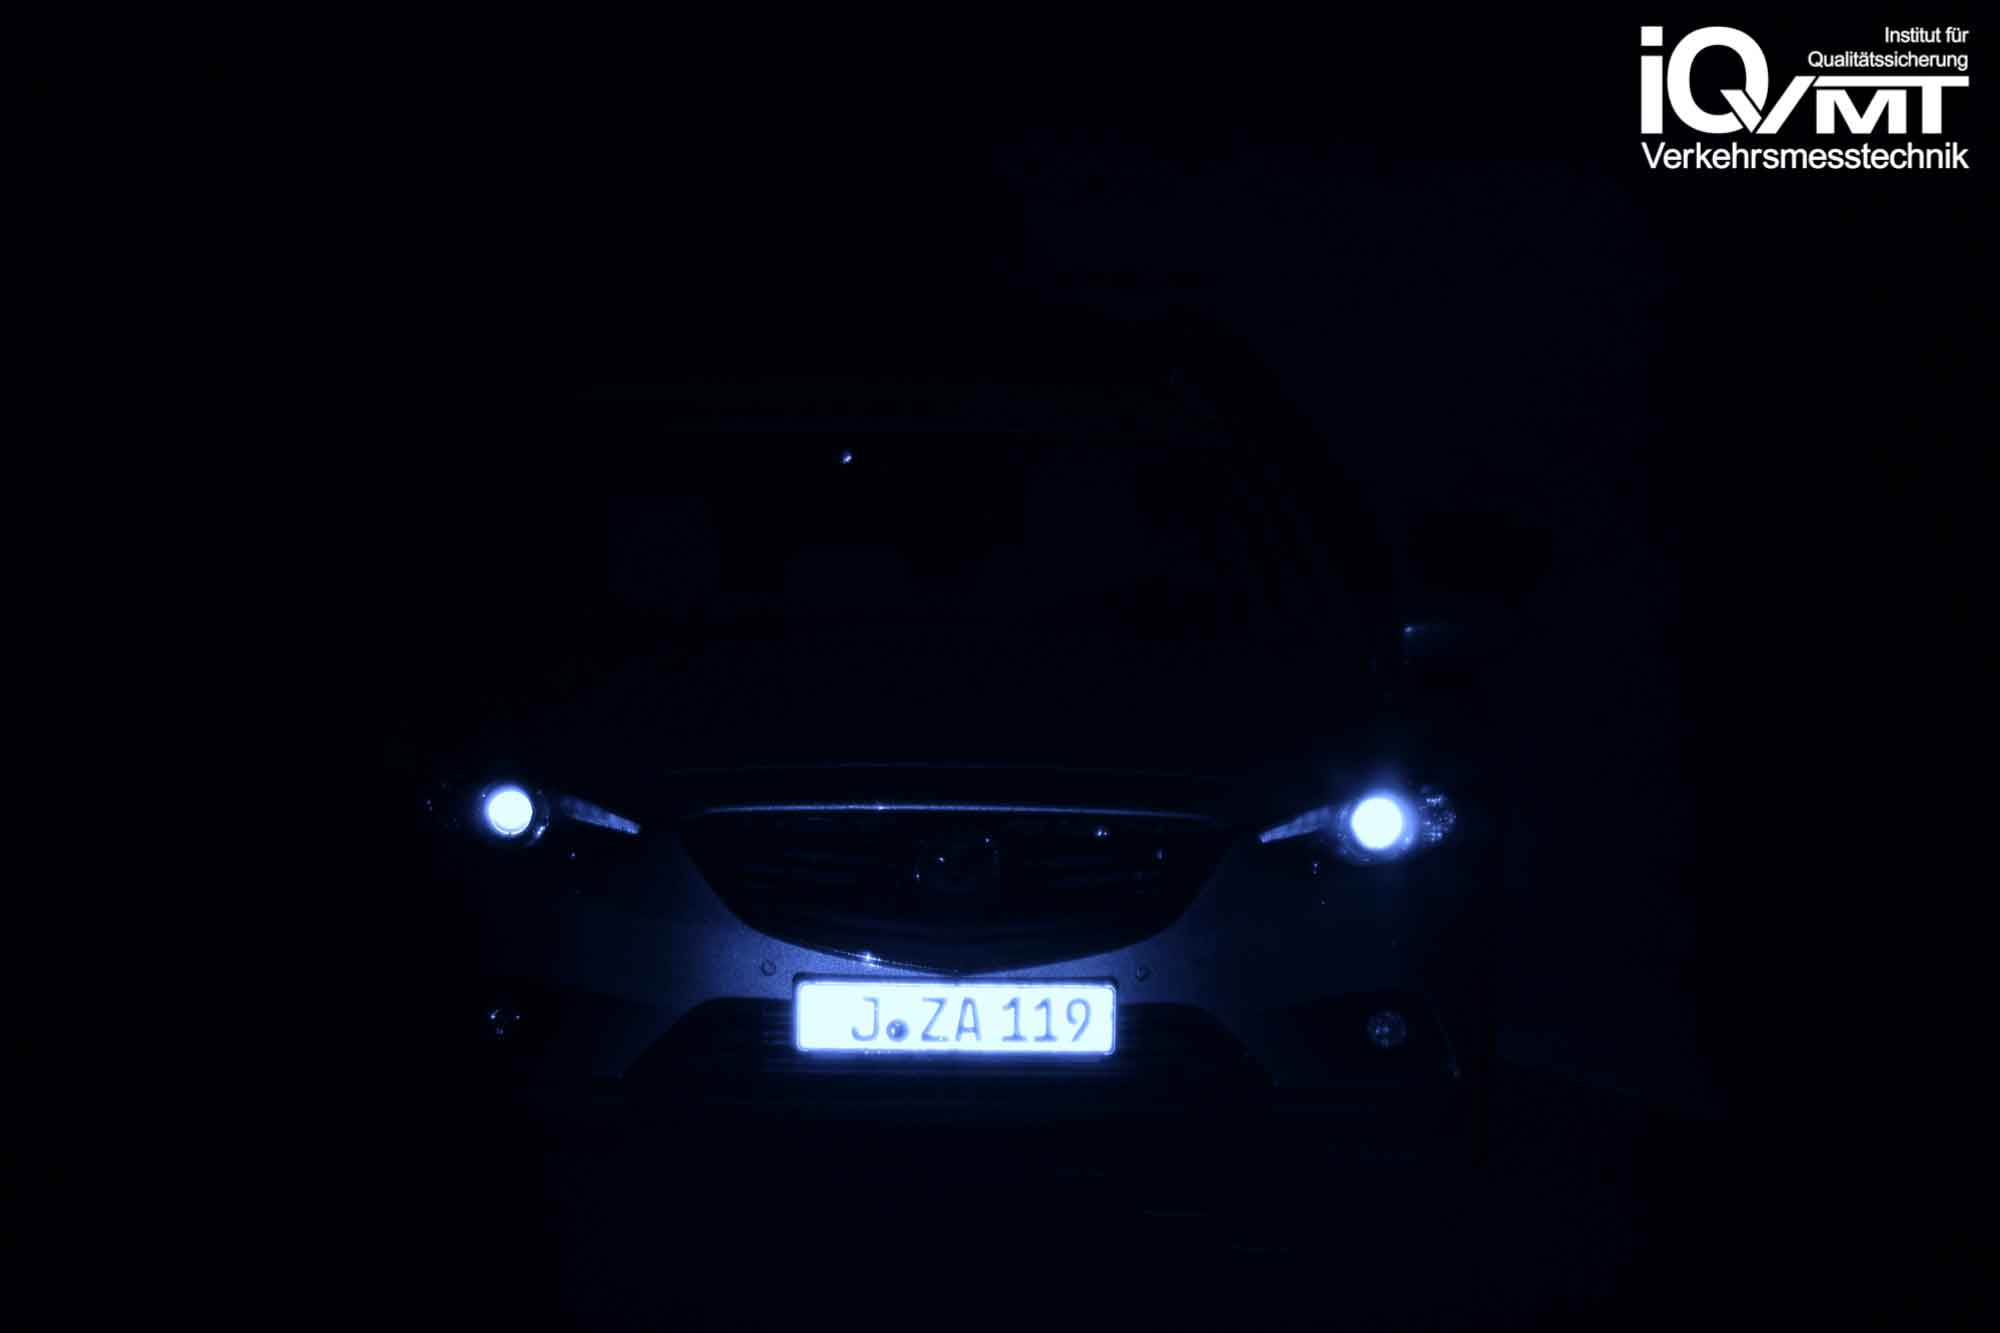 iQvmt - Infrarotfoto zur Refektivität der messrelevanten IR-Laserstrahlung am  Mazda 6